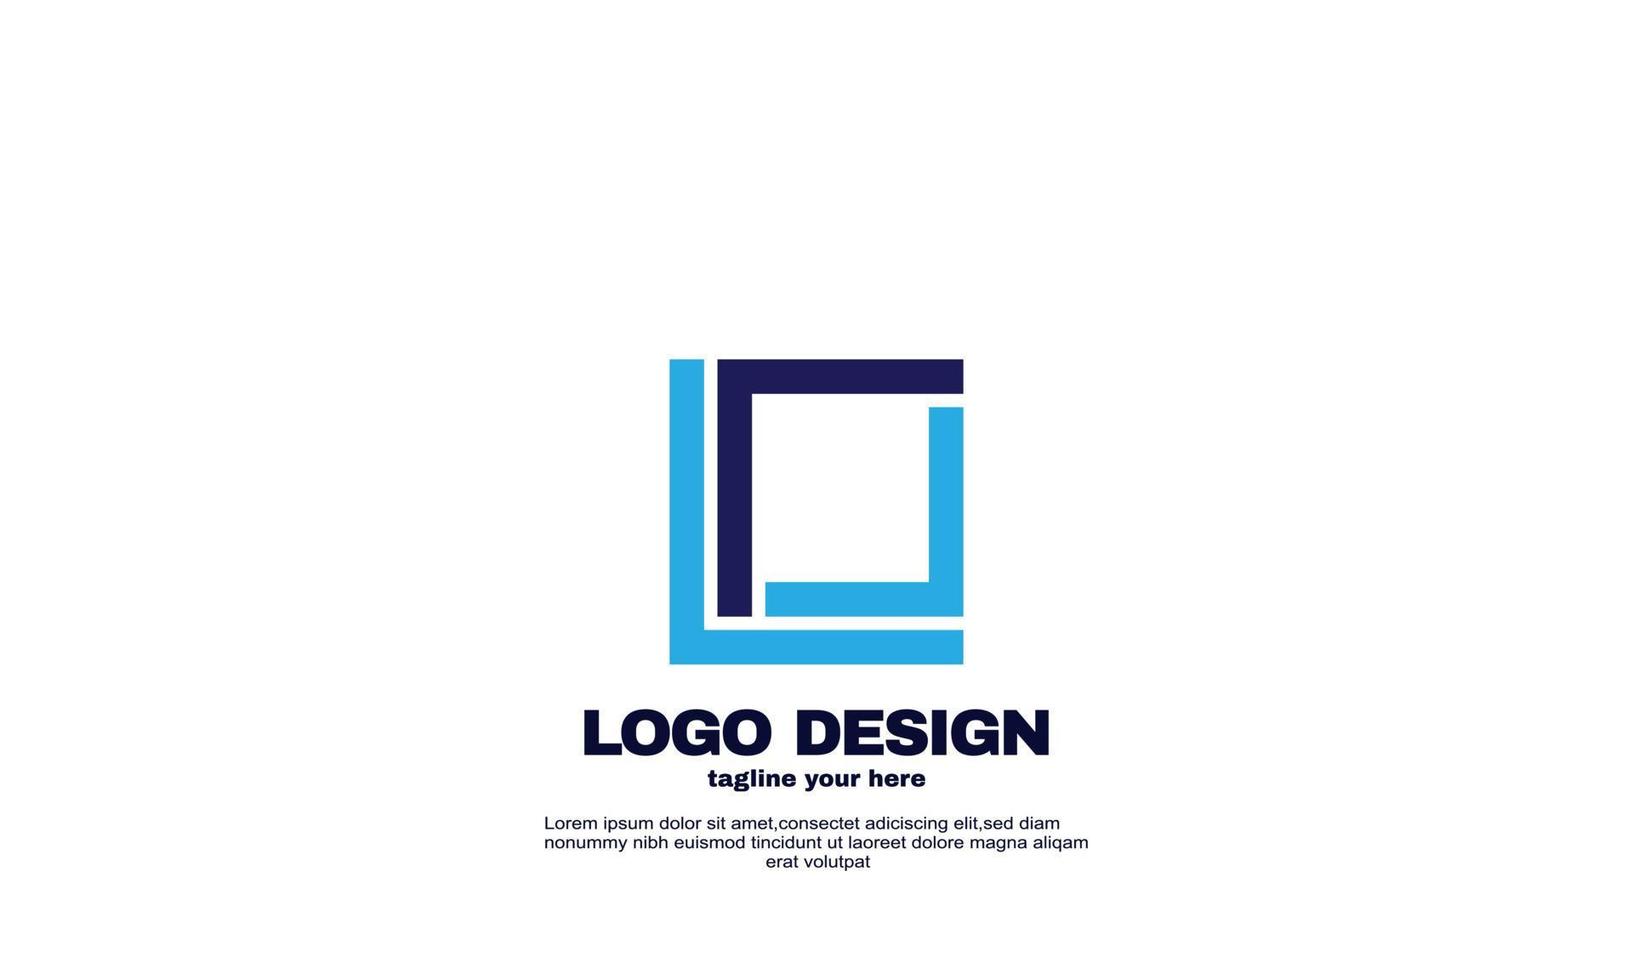 elementos de diseño creativo abstracto su identidad de marca empresa empresa plantilla de diseño de logotipo único vector